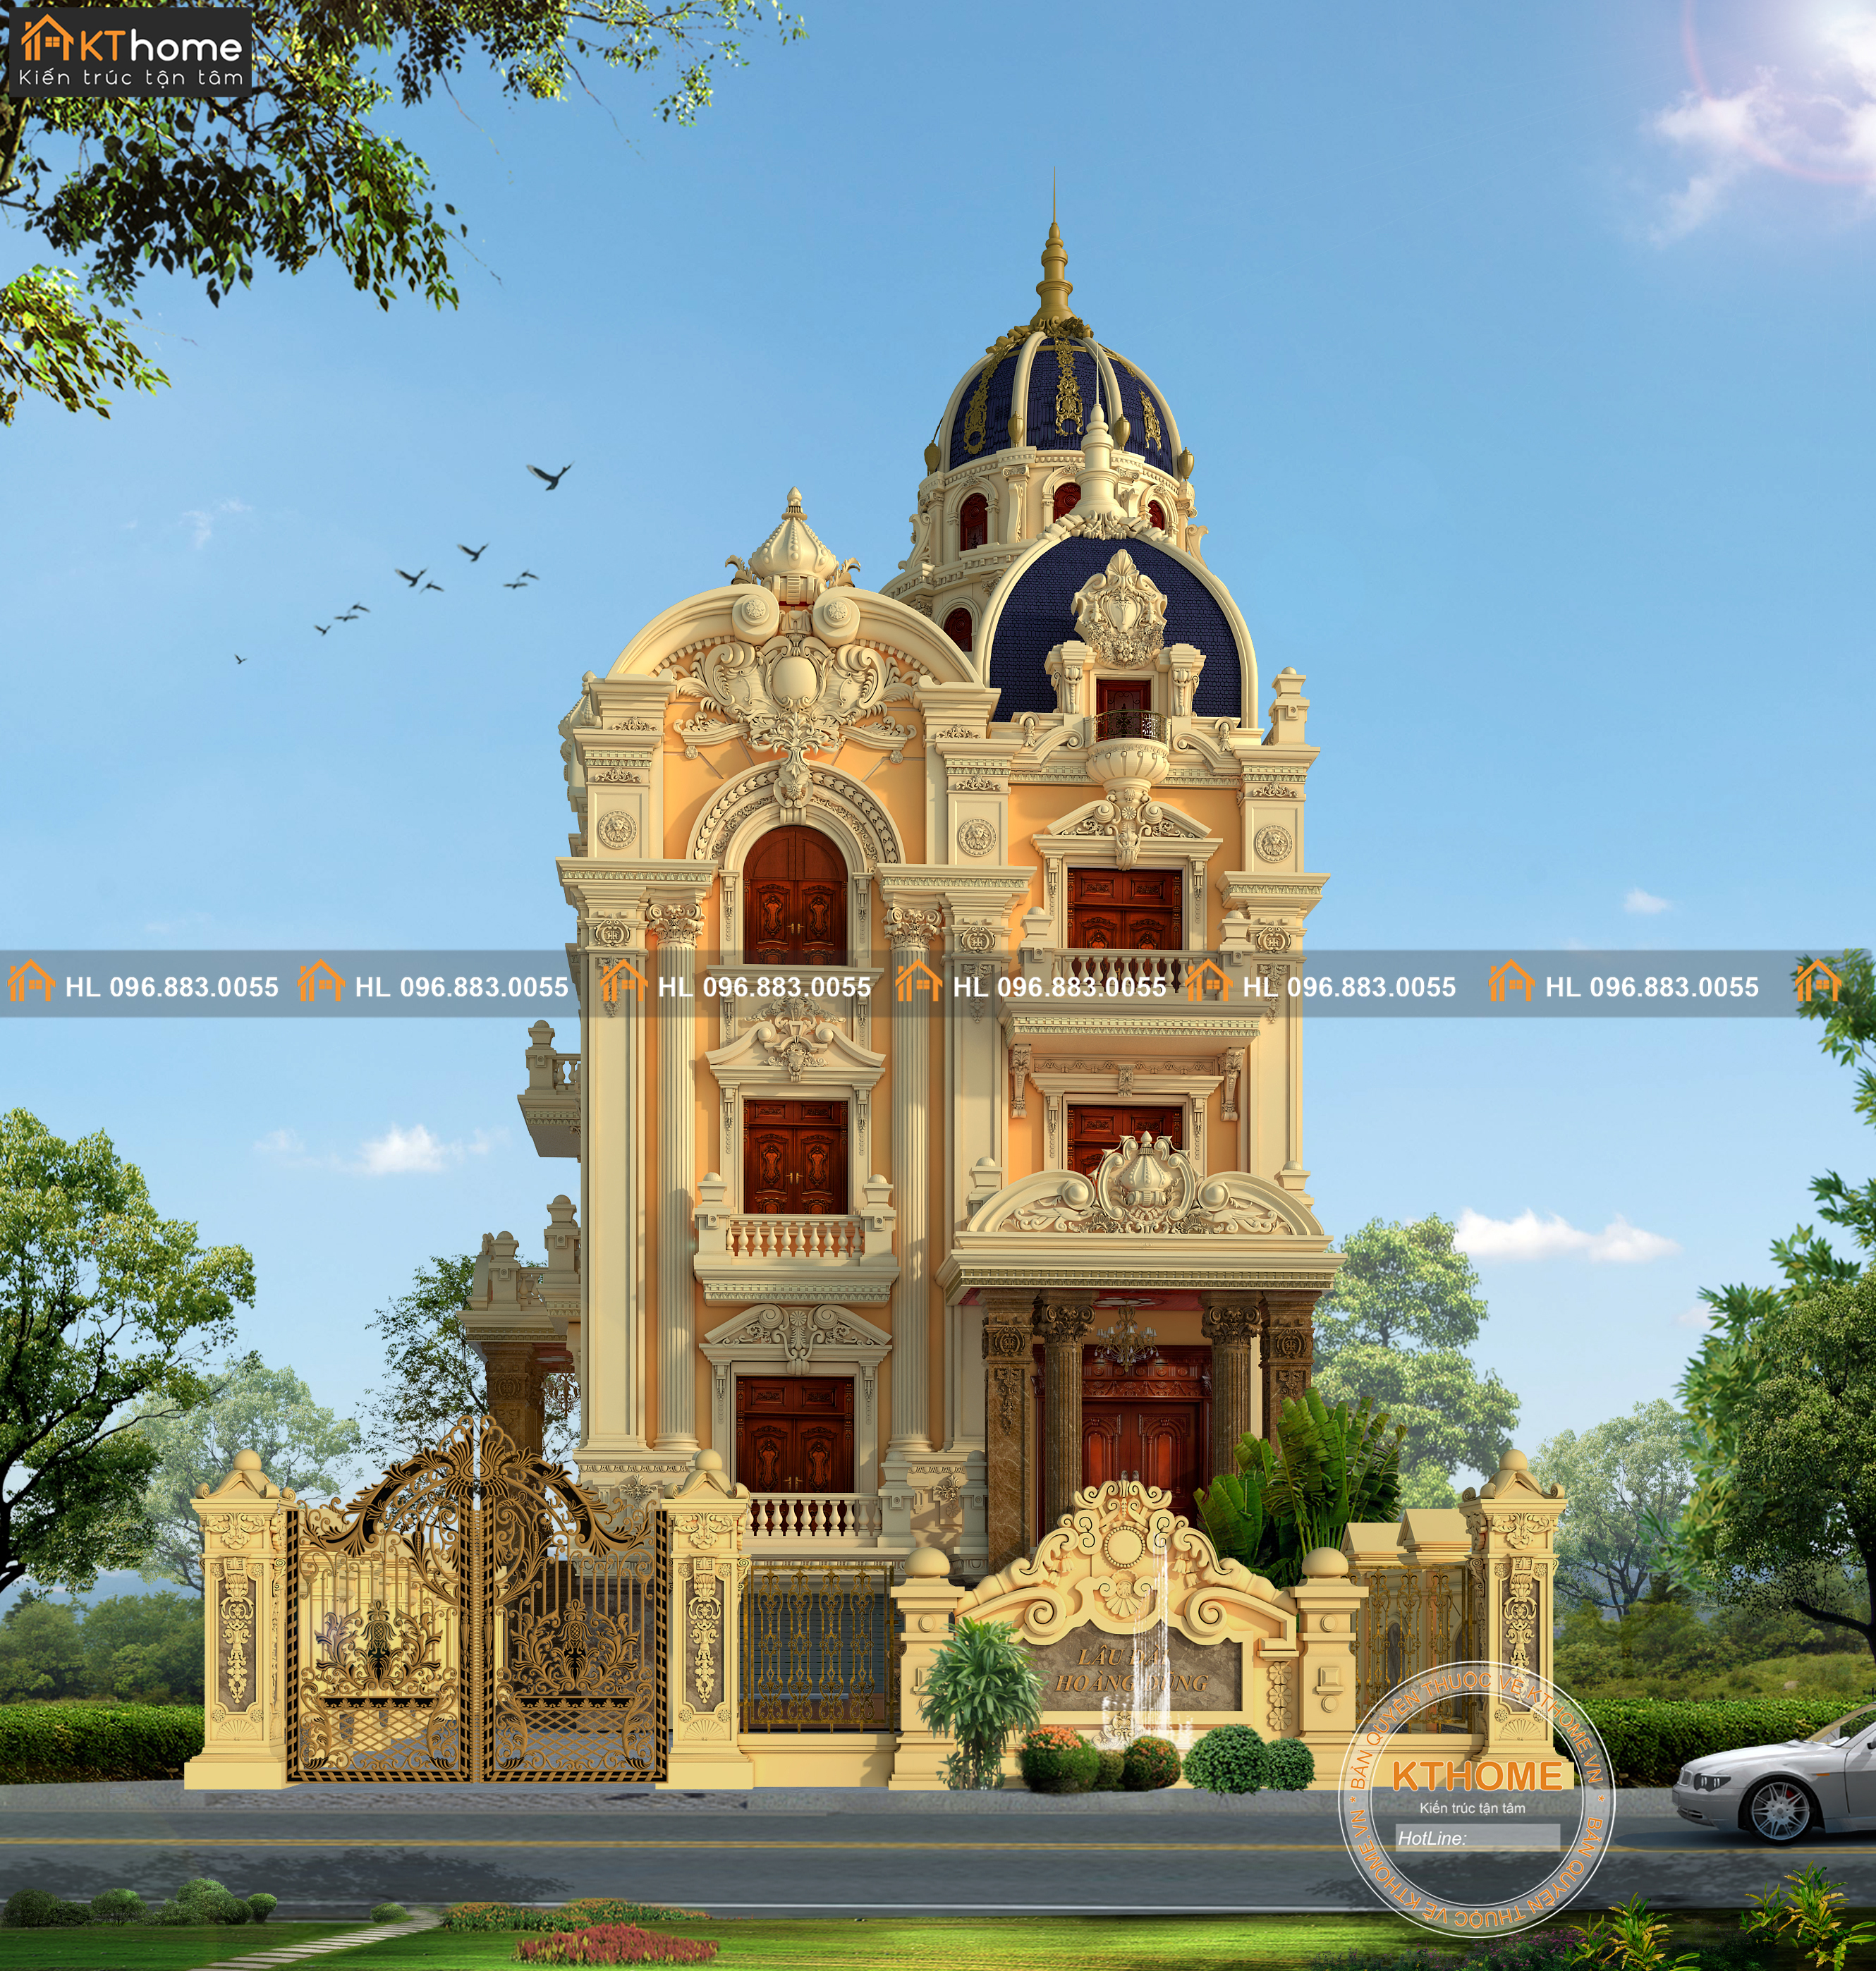 Thiết kế lâu đài 4 tầng cổ điển đẳng cấp thượng lưu tại Tây Ninh | Autodesk  Community Gallery